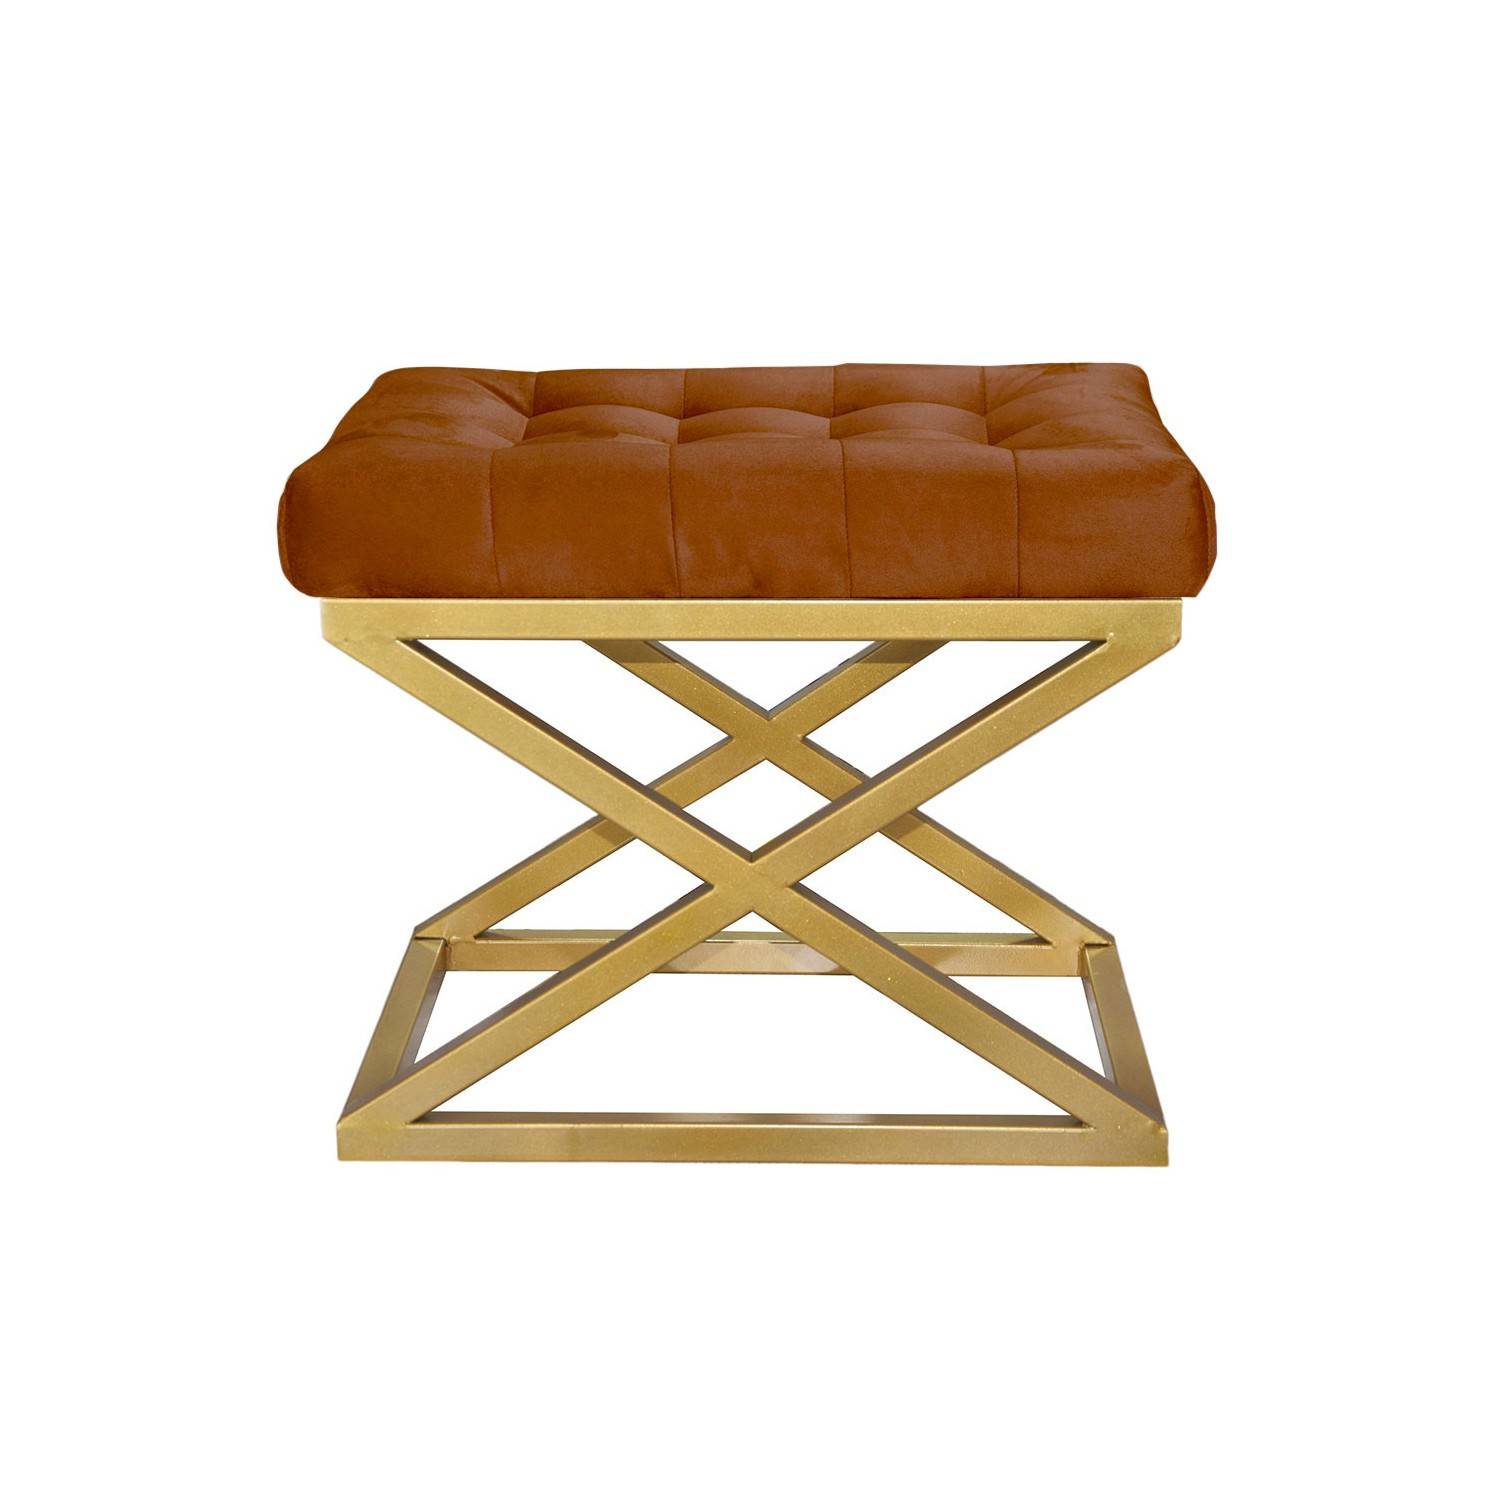 Taburete Ulad de metal dorado y terciopelo terracota, asiento tapizado